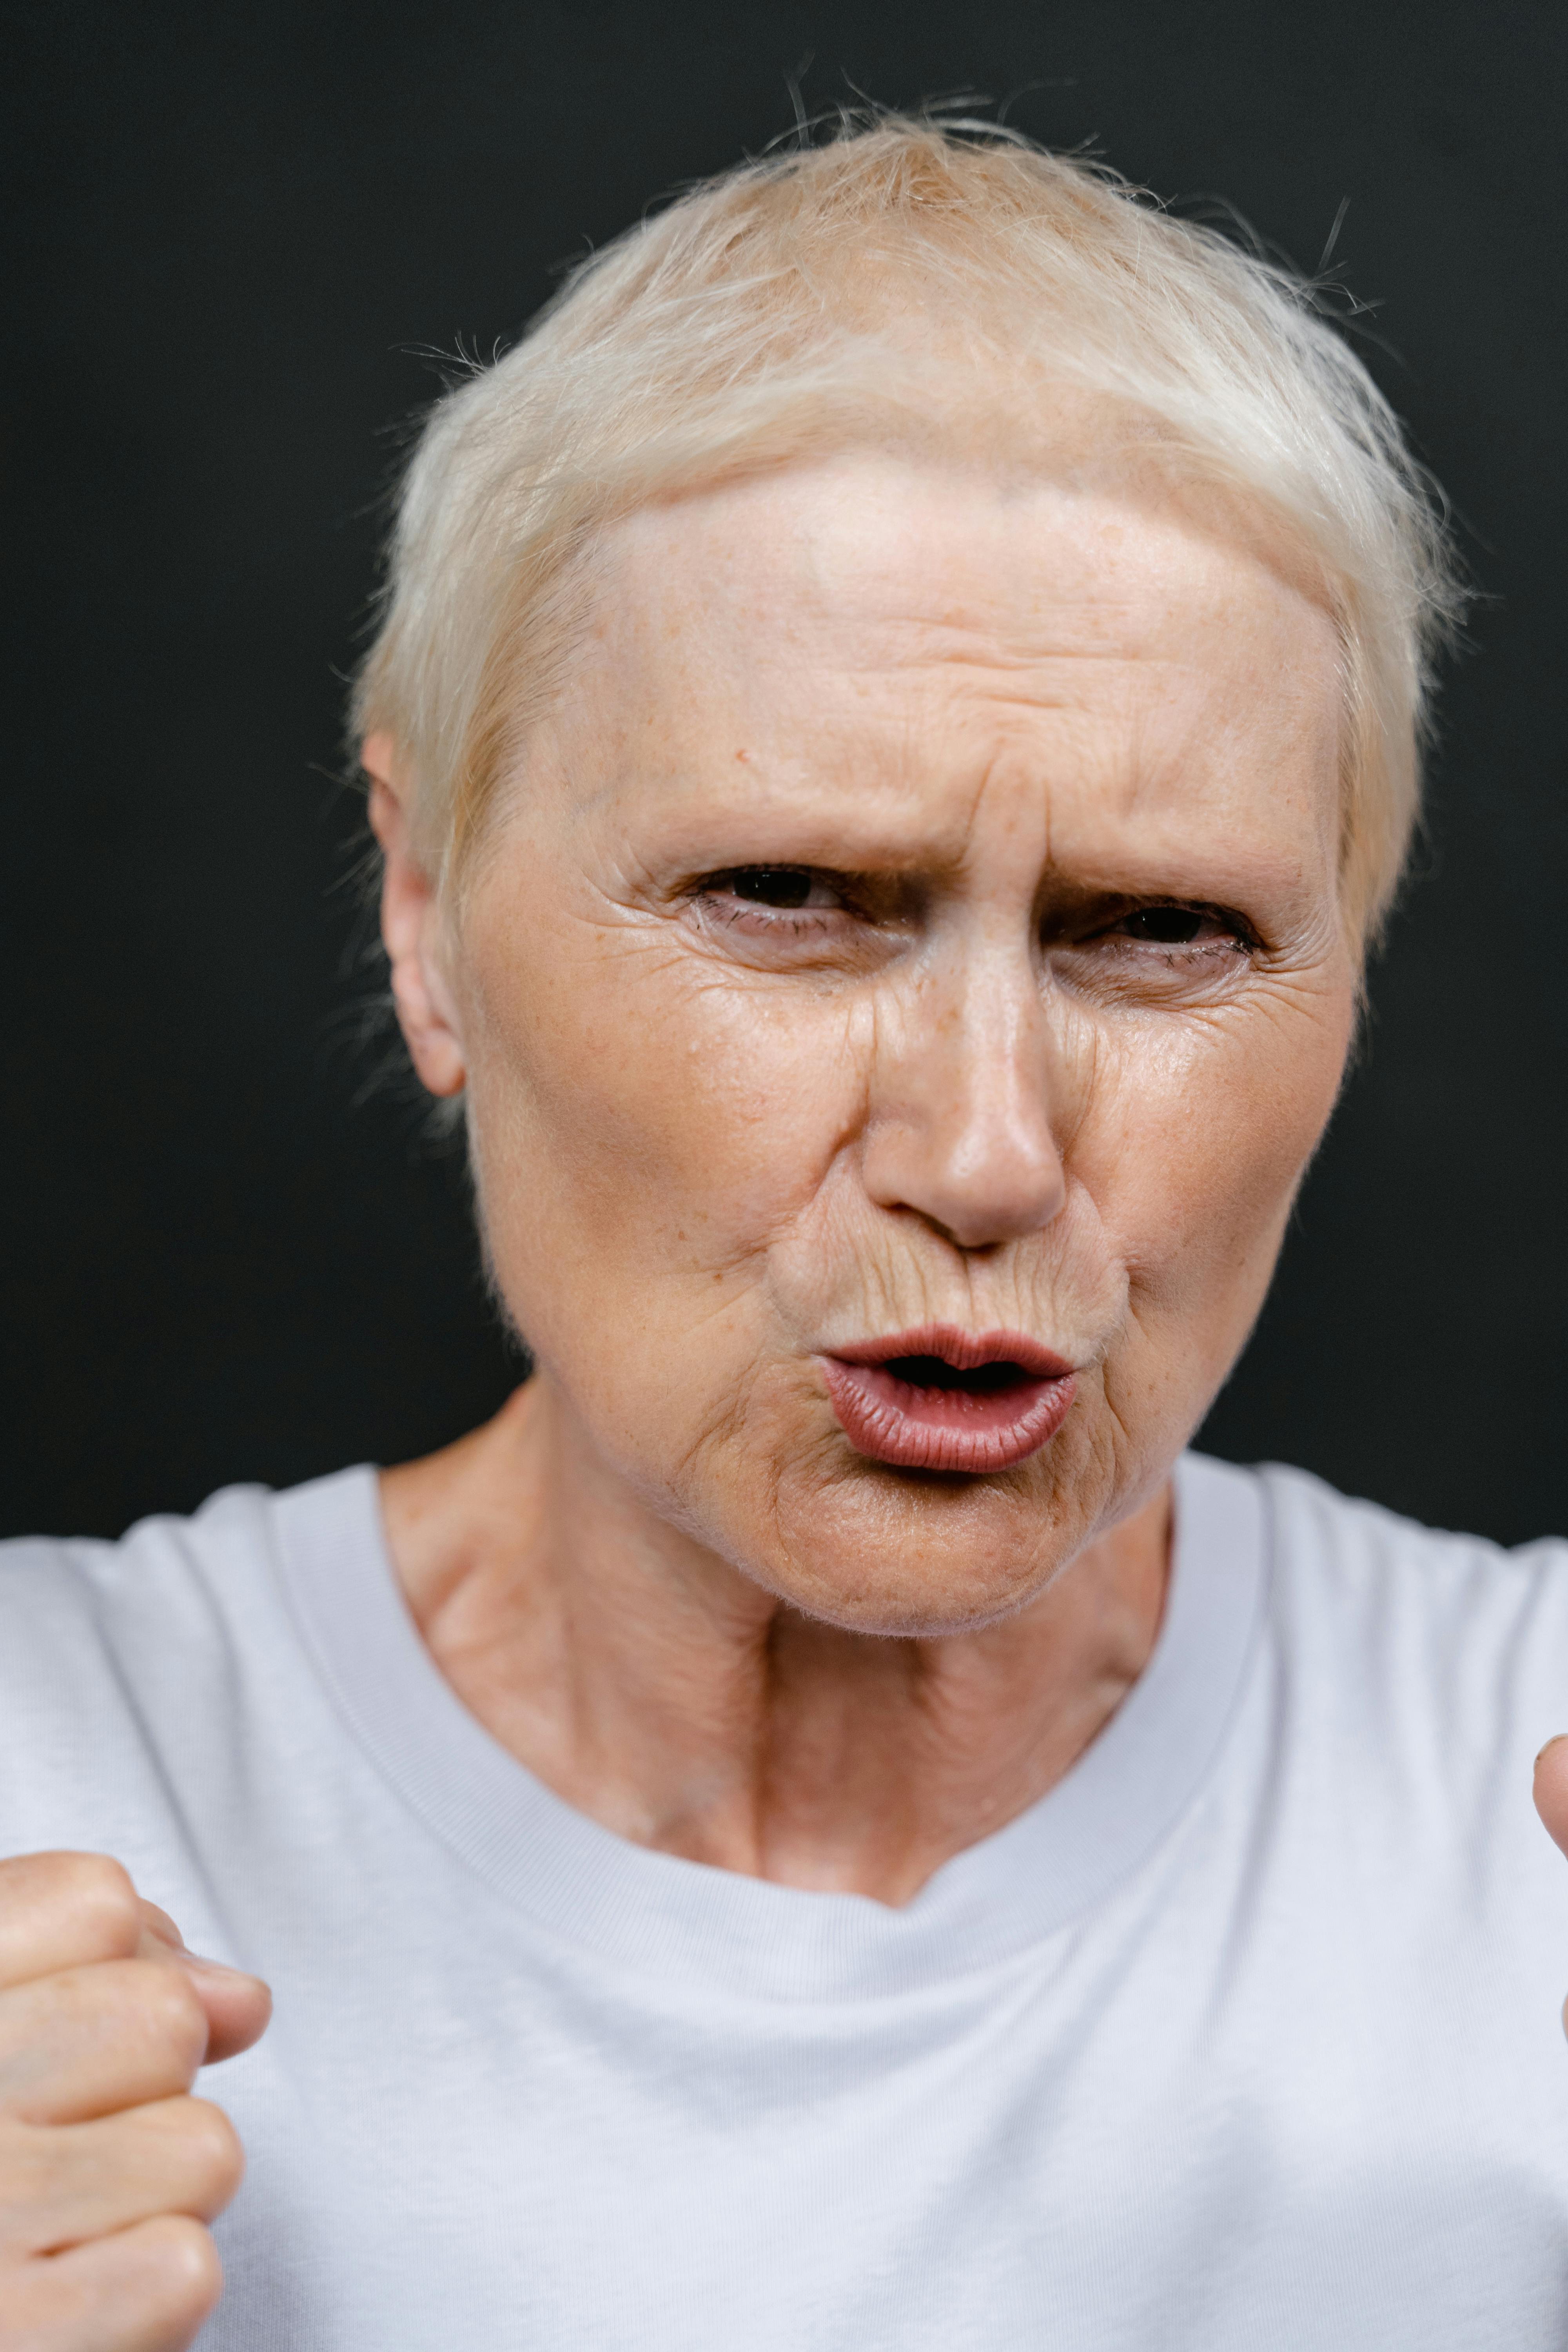 Femme âgée répondant avec colère | Source : Pexels